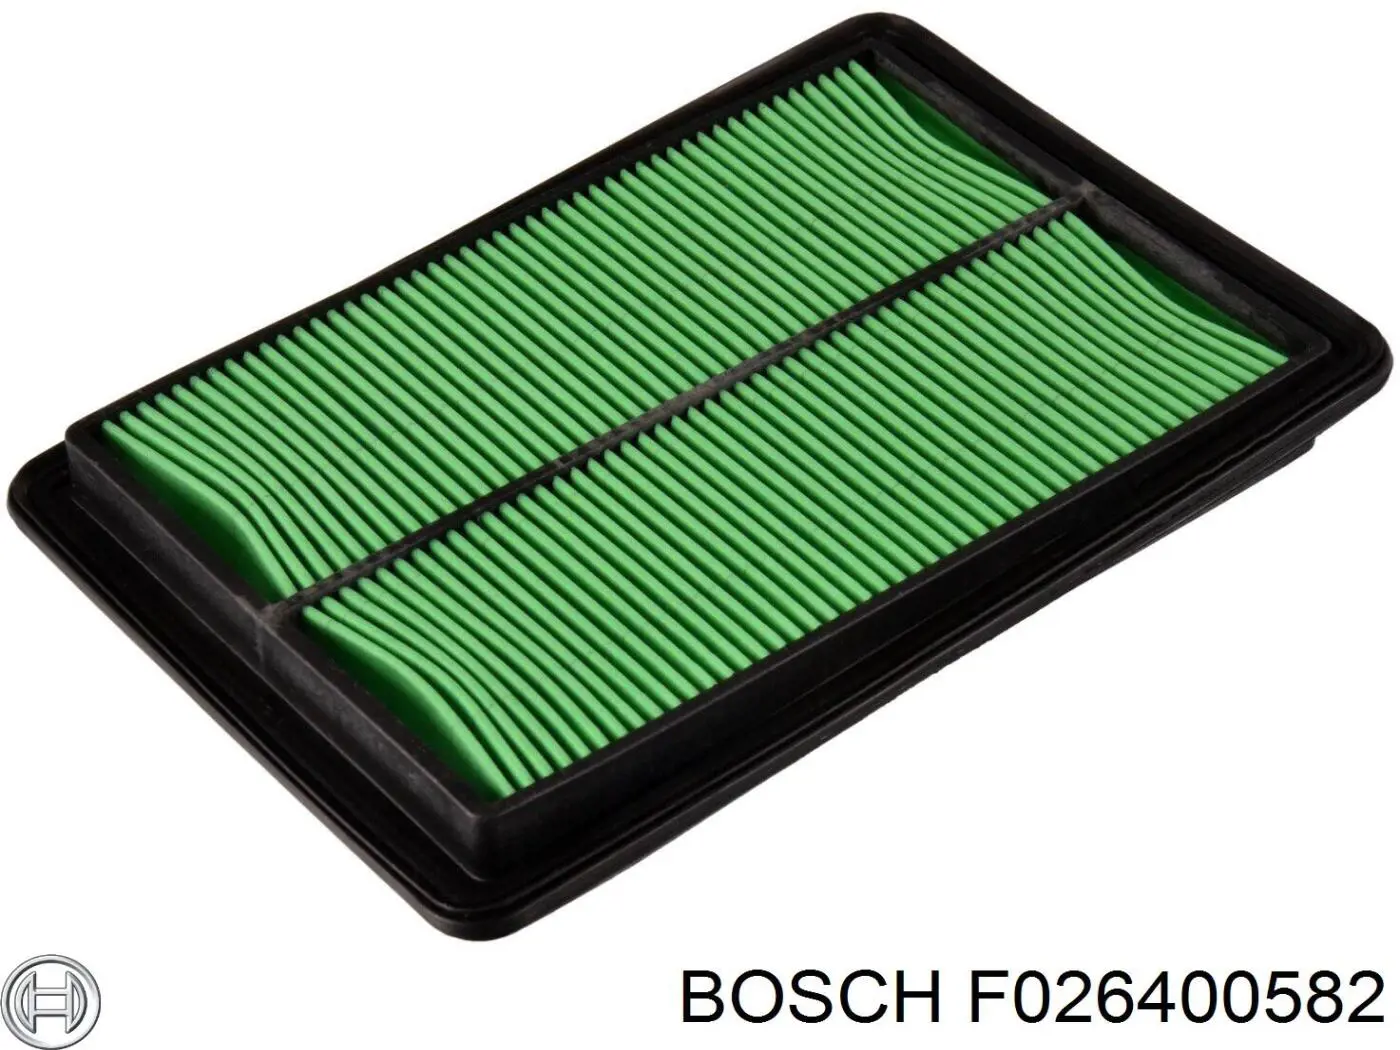 F026400582 Bosch filtro de aire